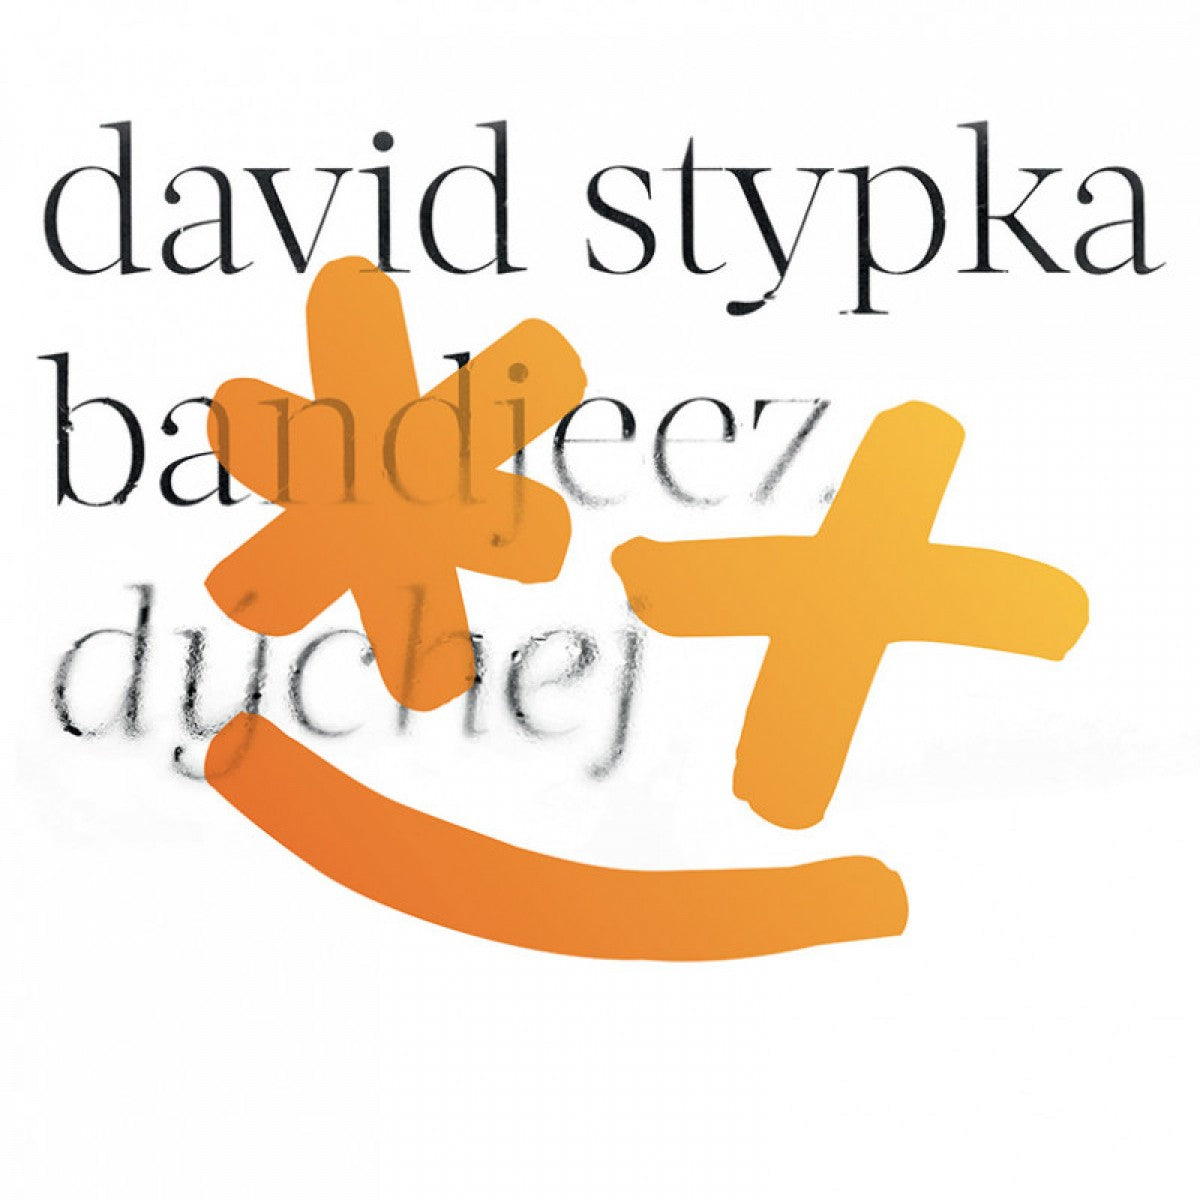 David Stypka: Dychej CD